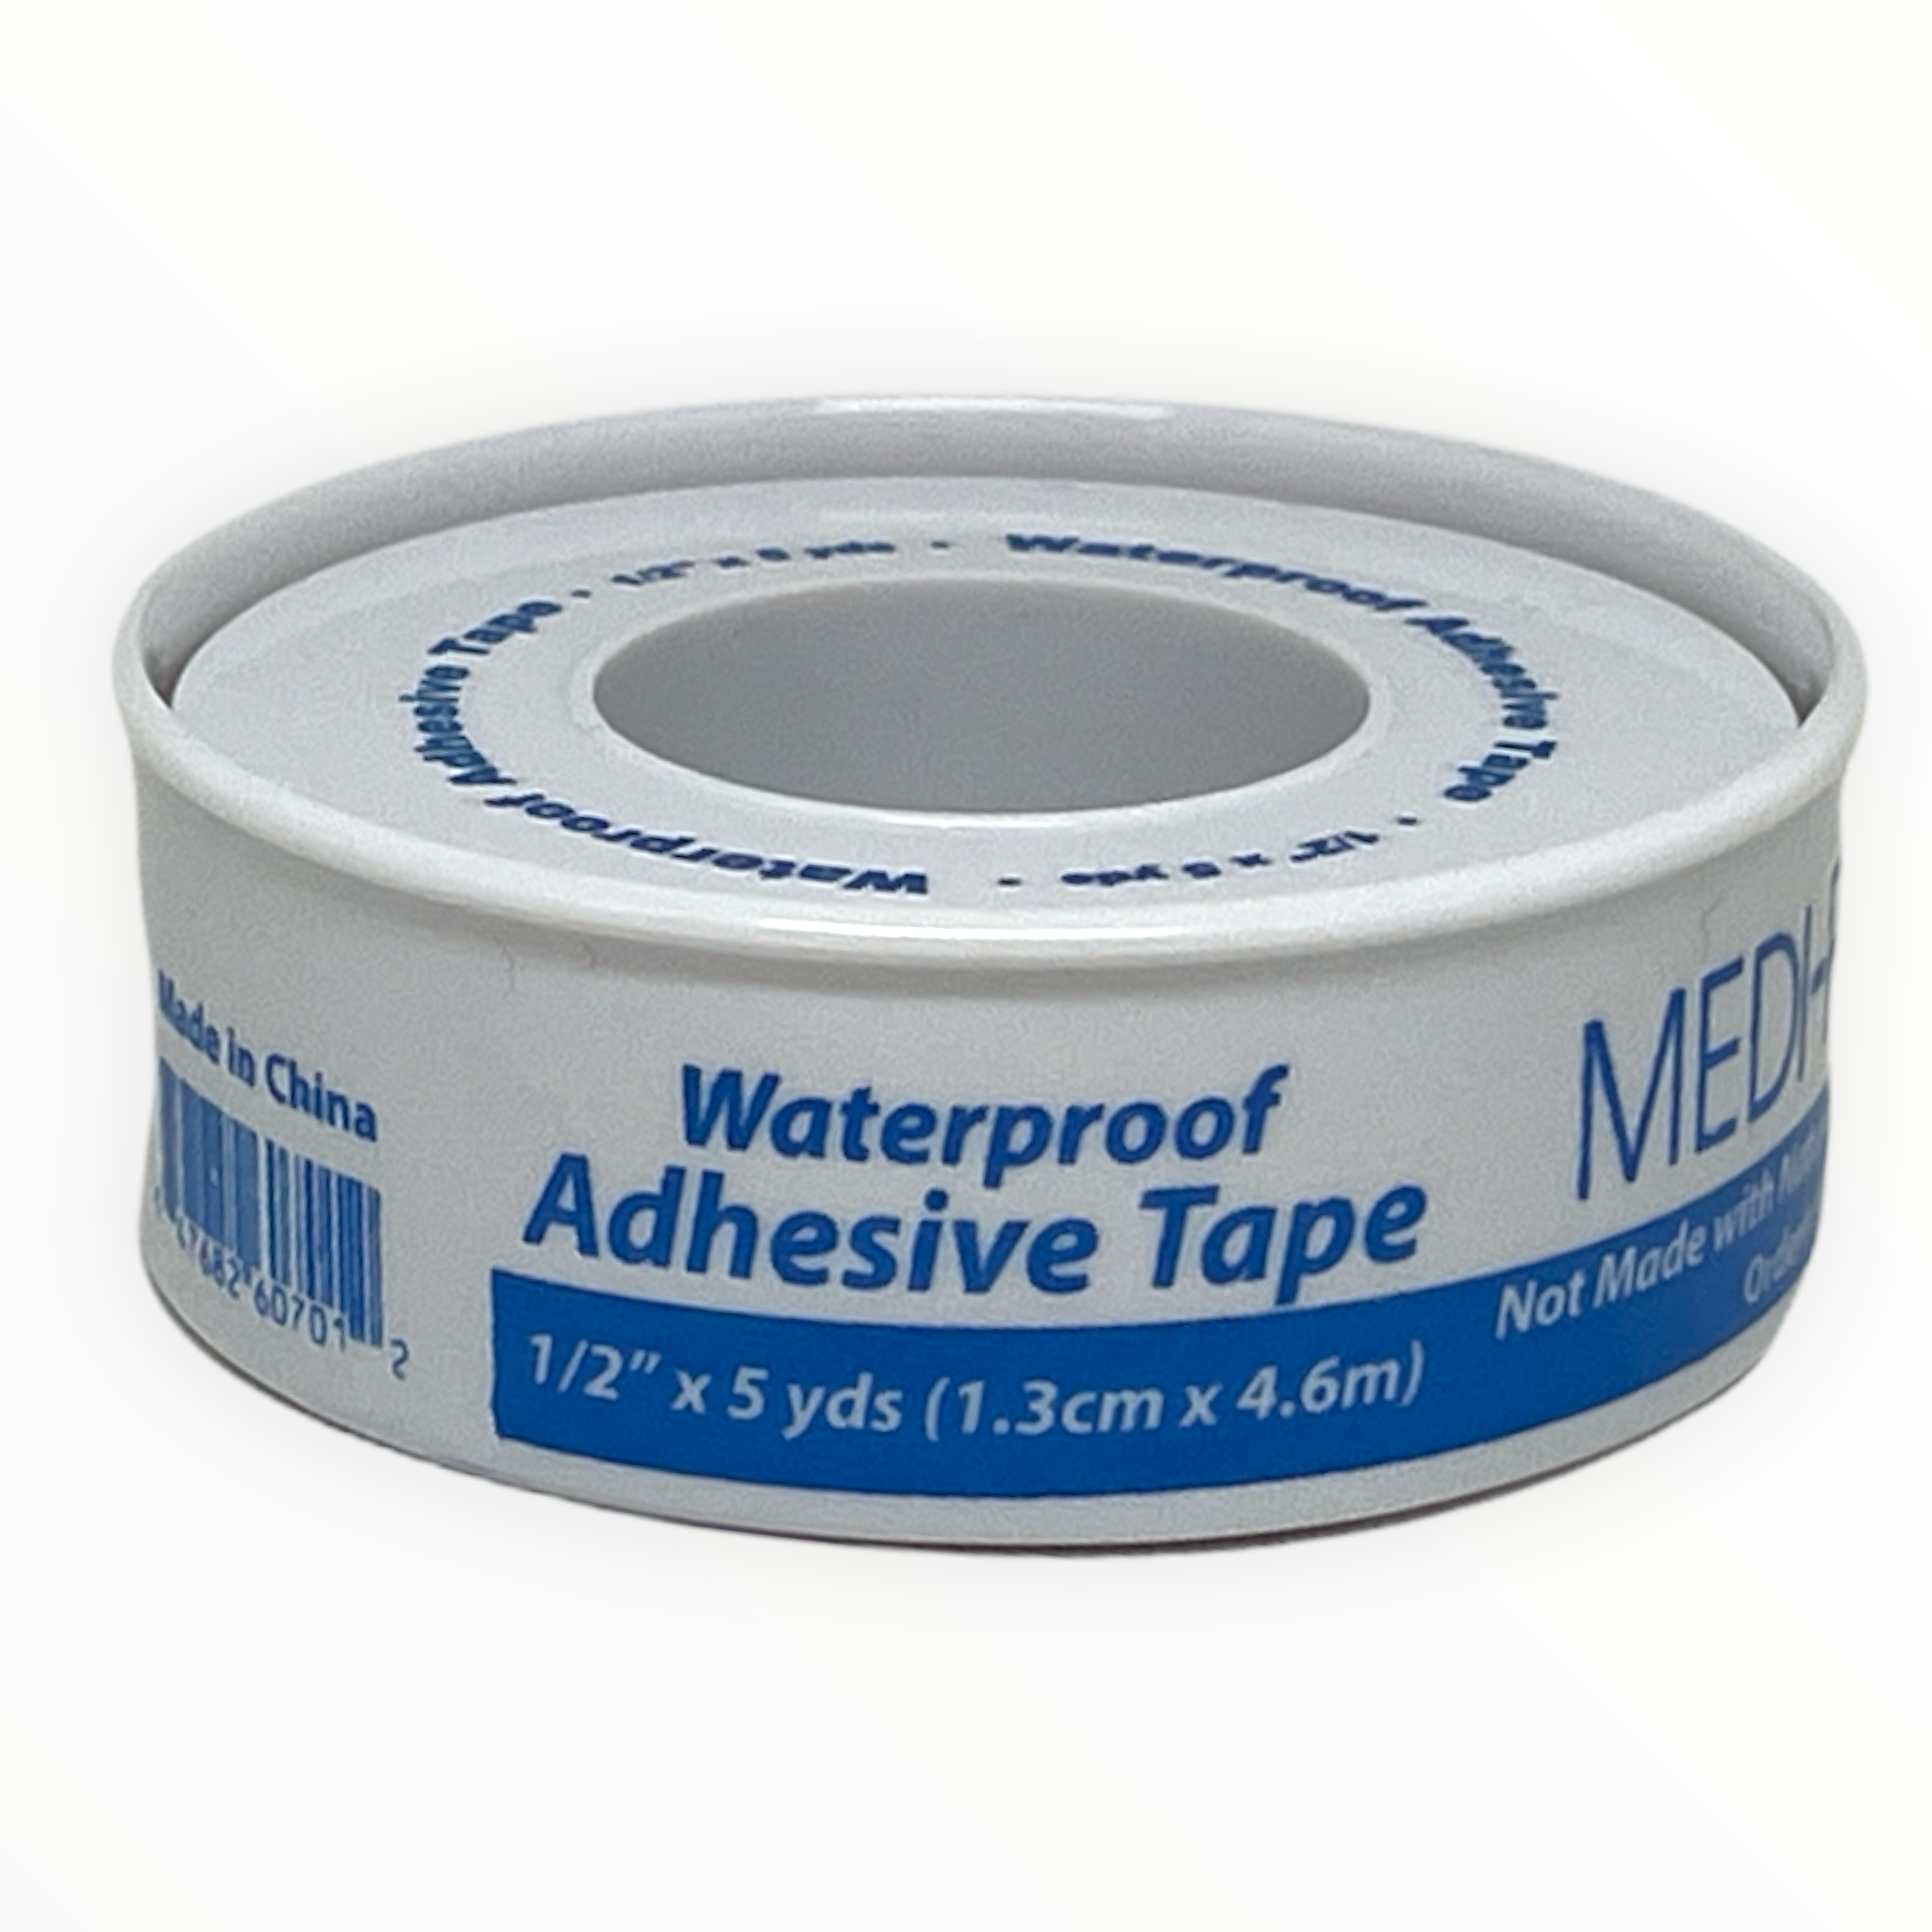 Medique | Adhesive Tape Waterproof 1/2